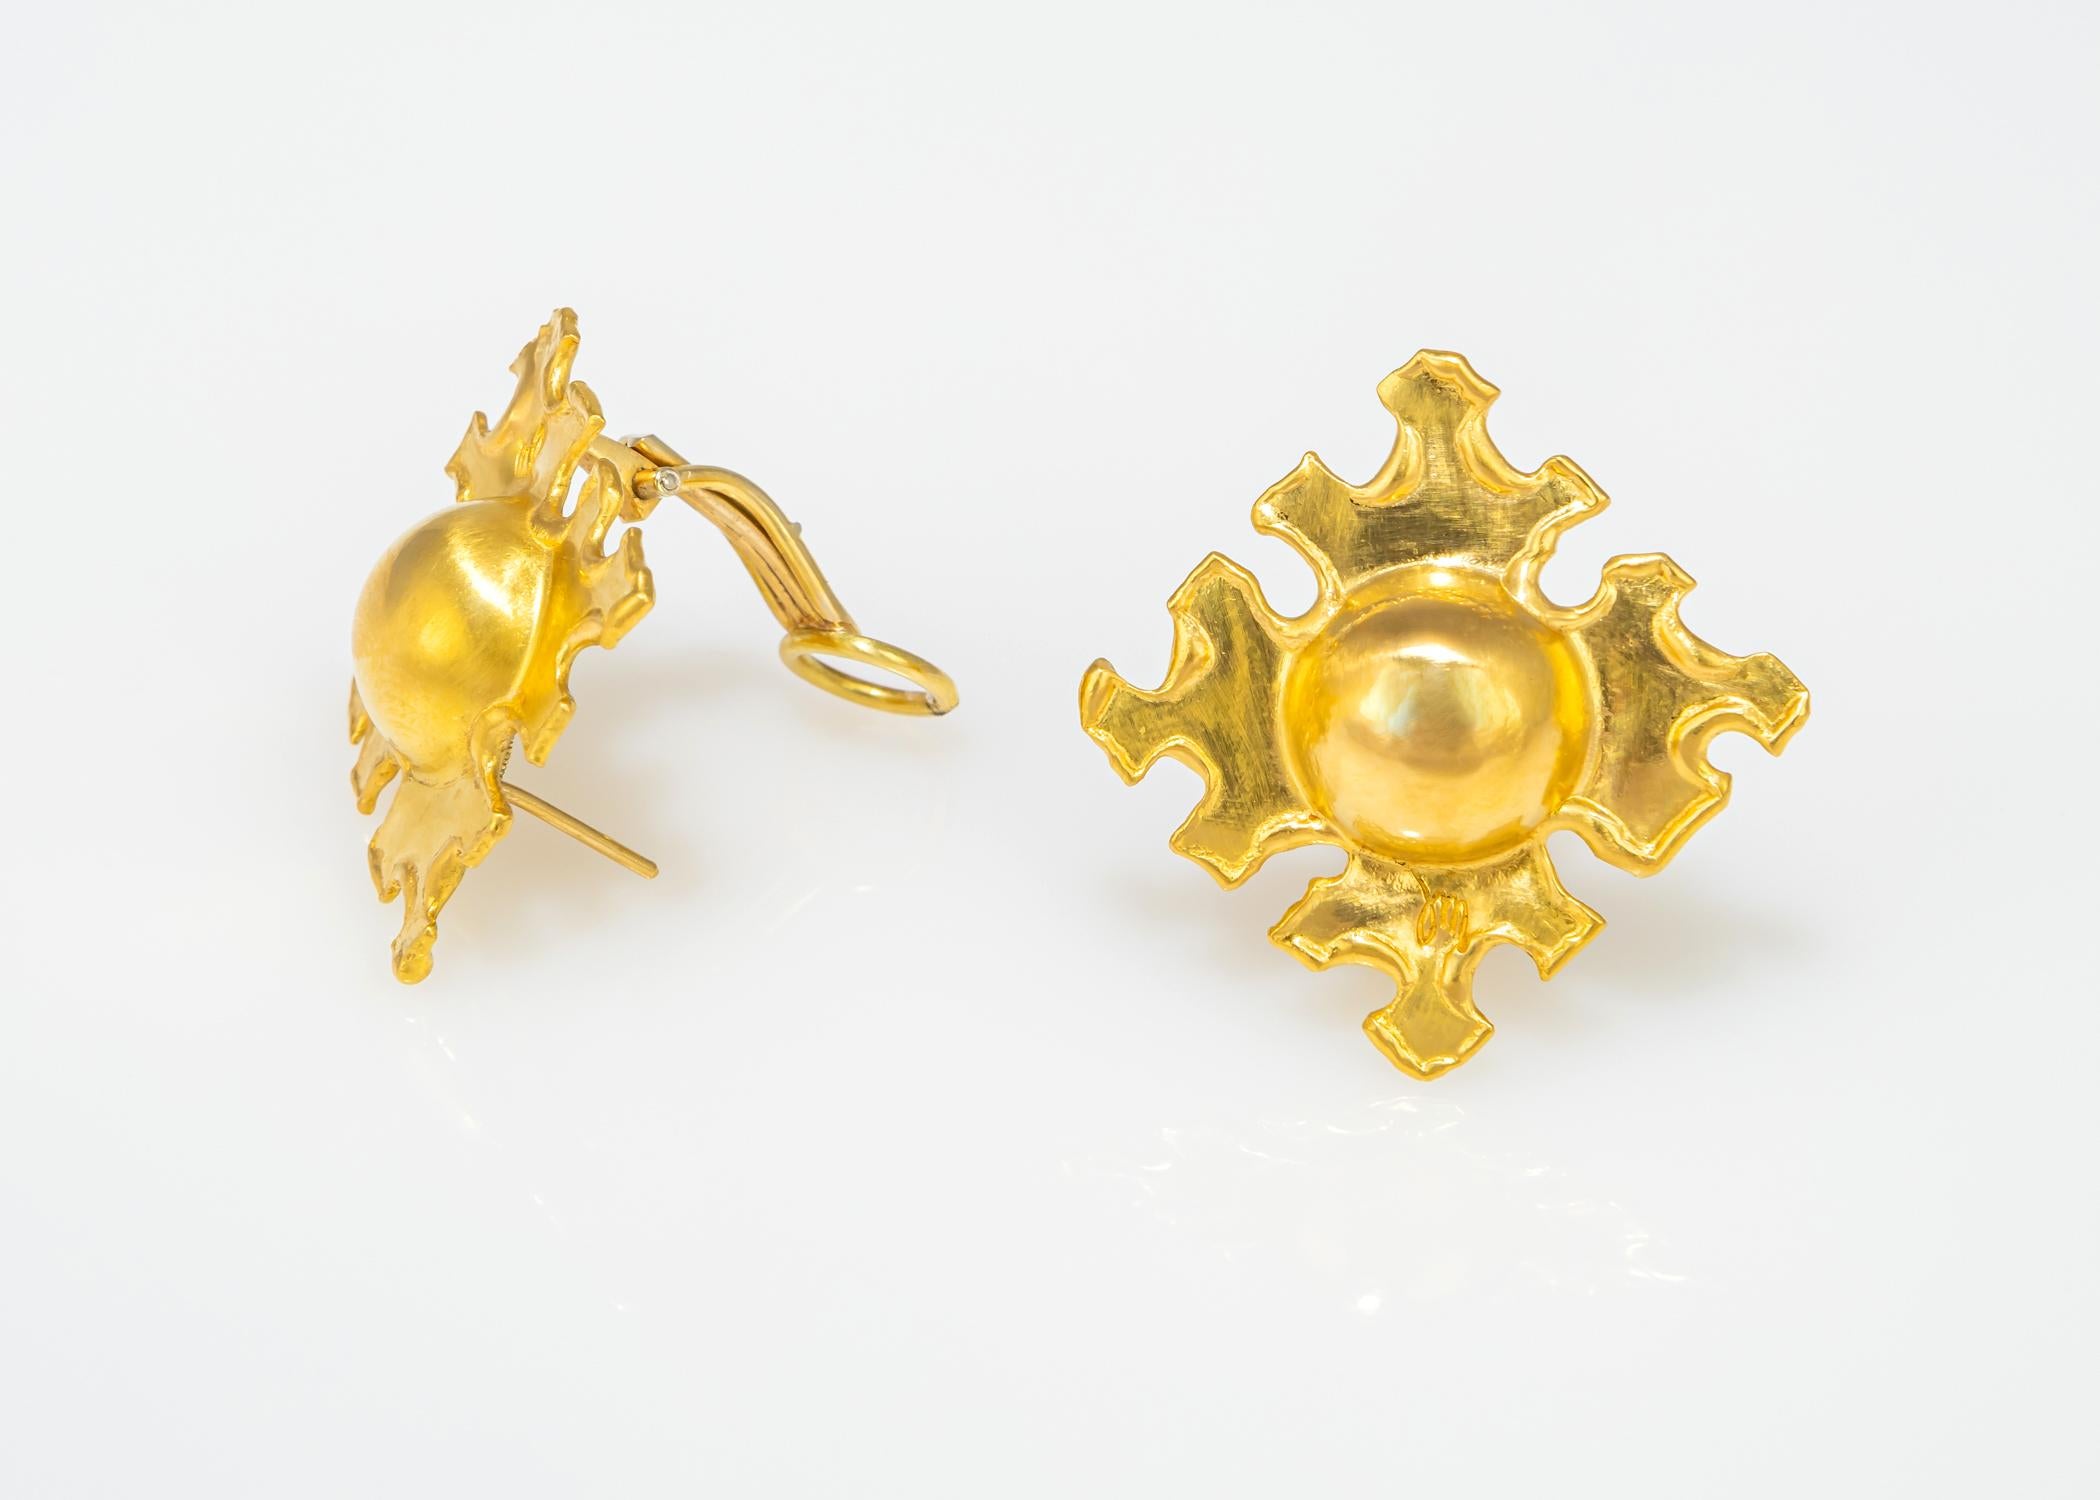 Jean Mahie schafft einzigartige tragbare Kunst. Alles handgefertigt in 22K Gold. Ein klassischer und schicker Ohrring, der immer passt. 1 1/4 Zoll in der Größe.